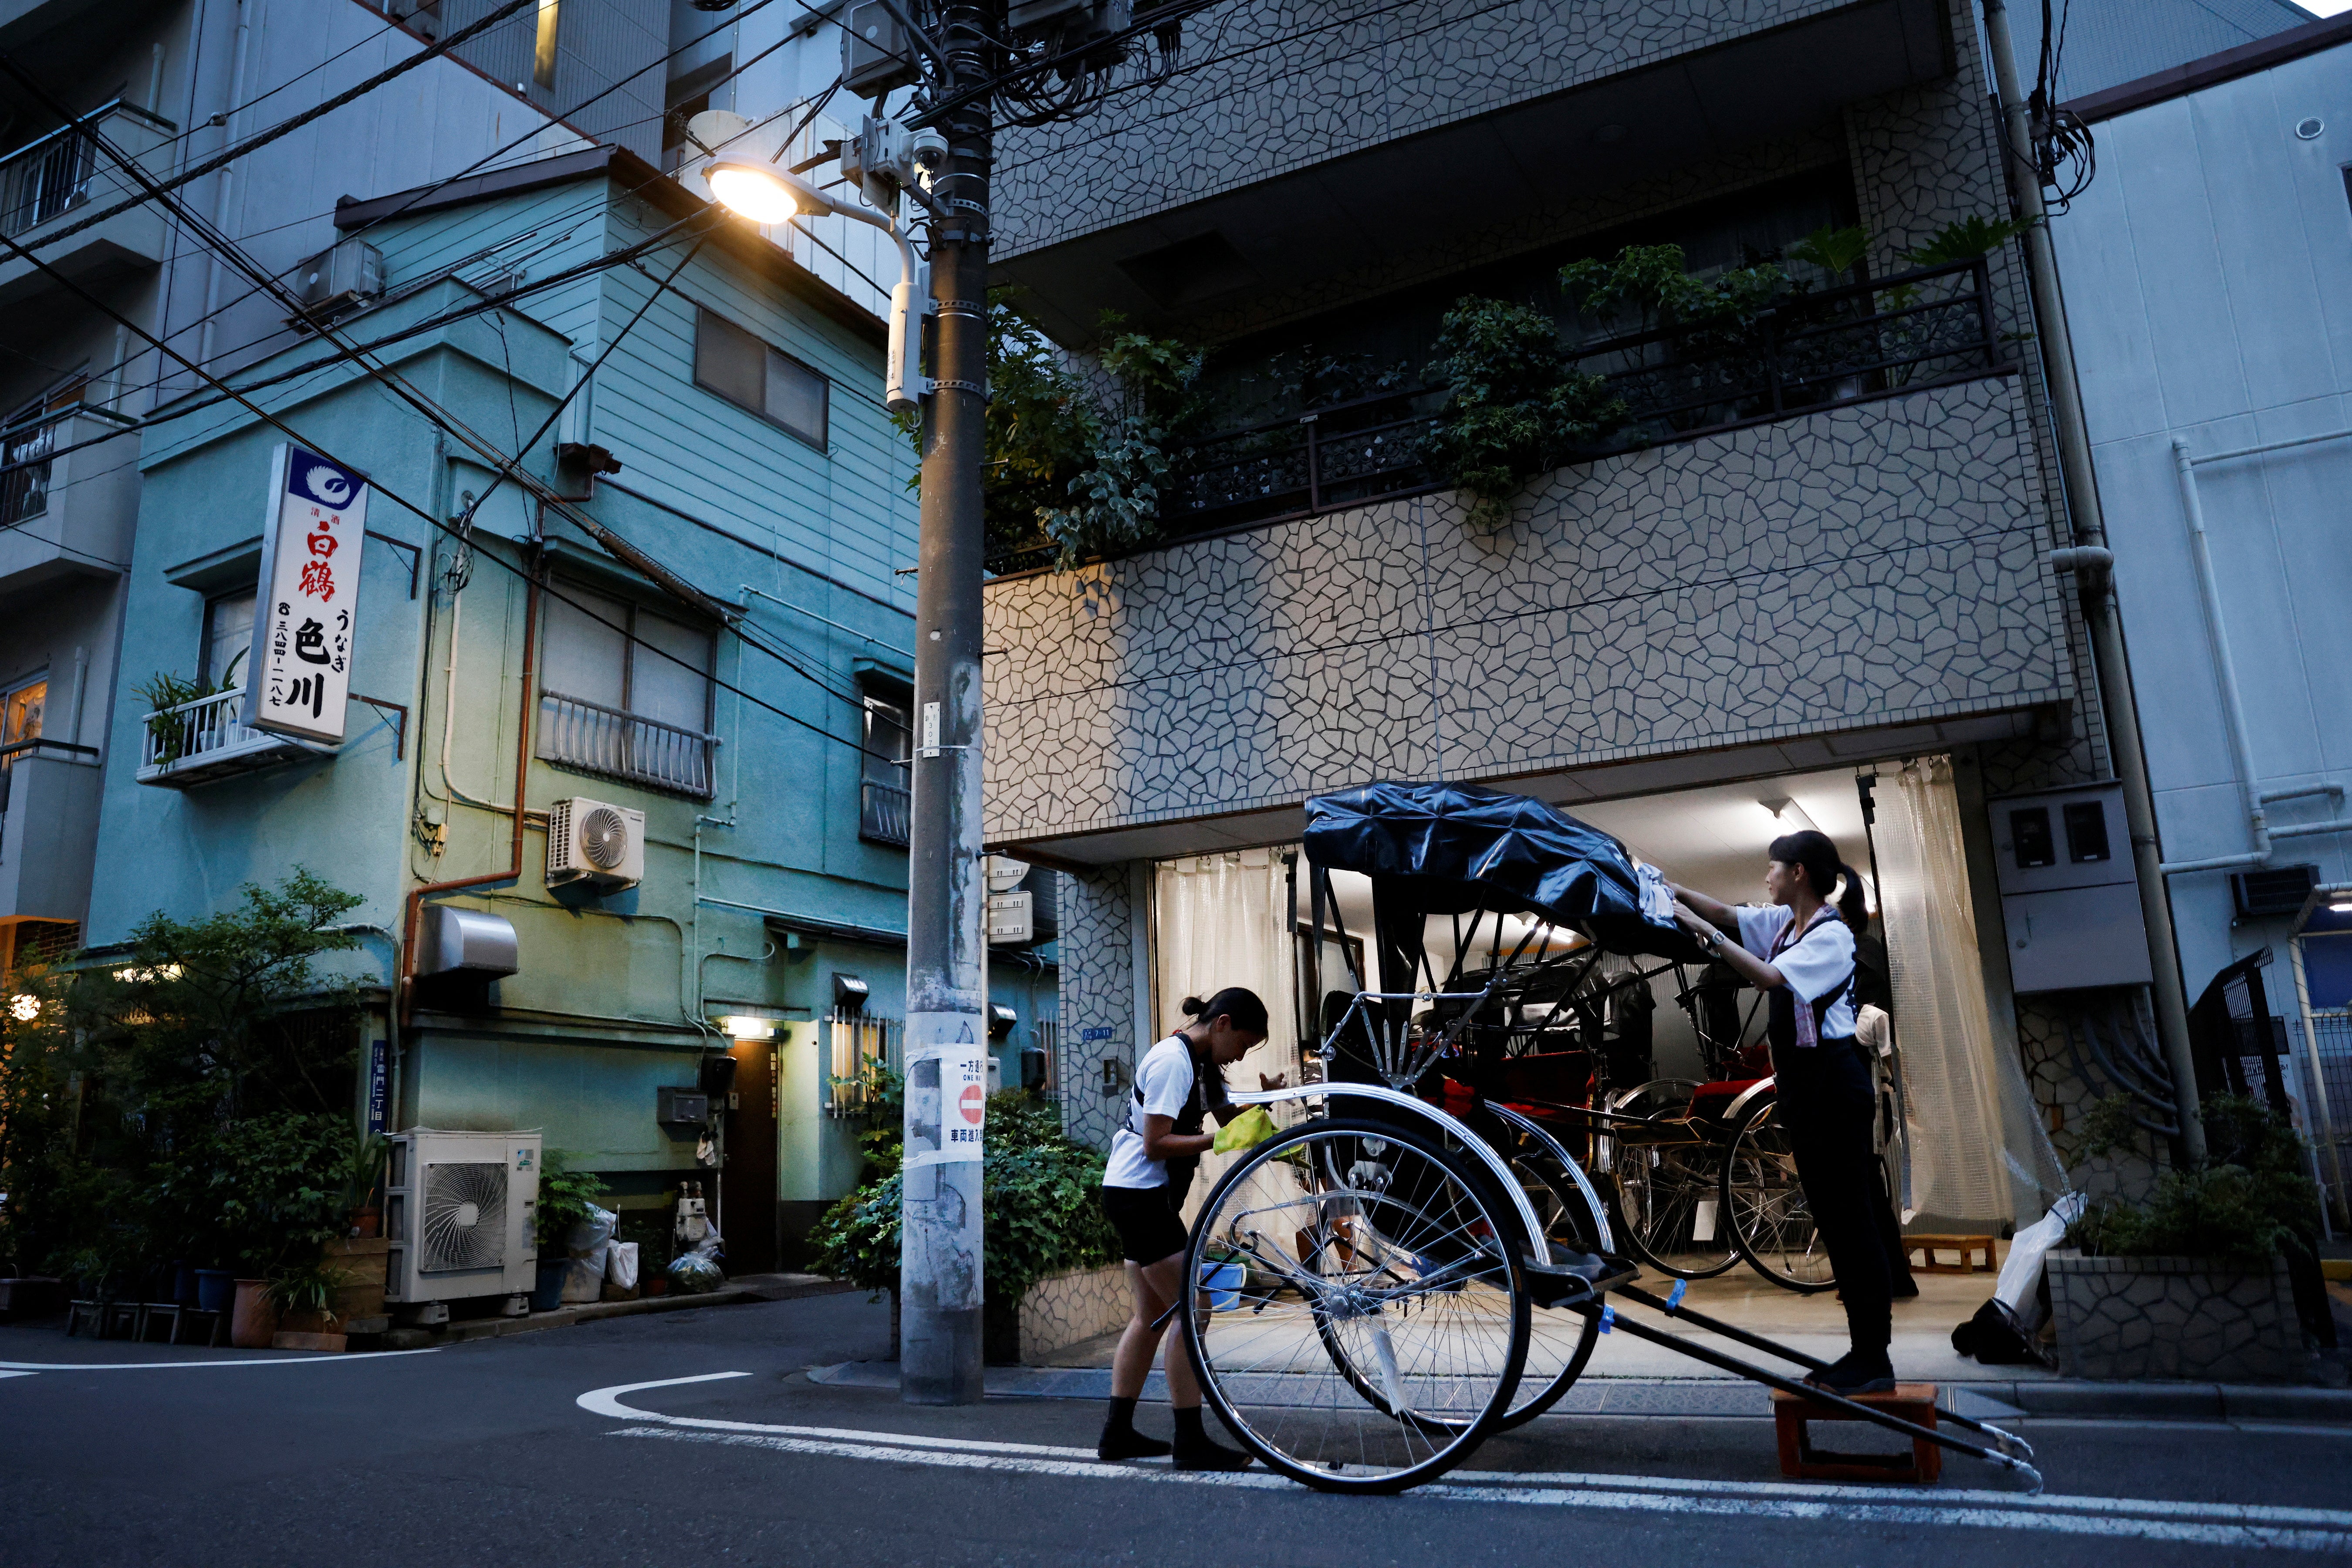 Drivers Akina Suzuki (left), 19, and Misato Otoshi, 30, clean up a rickshaw after work